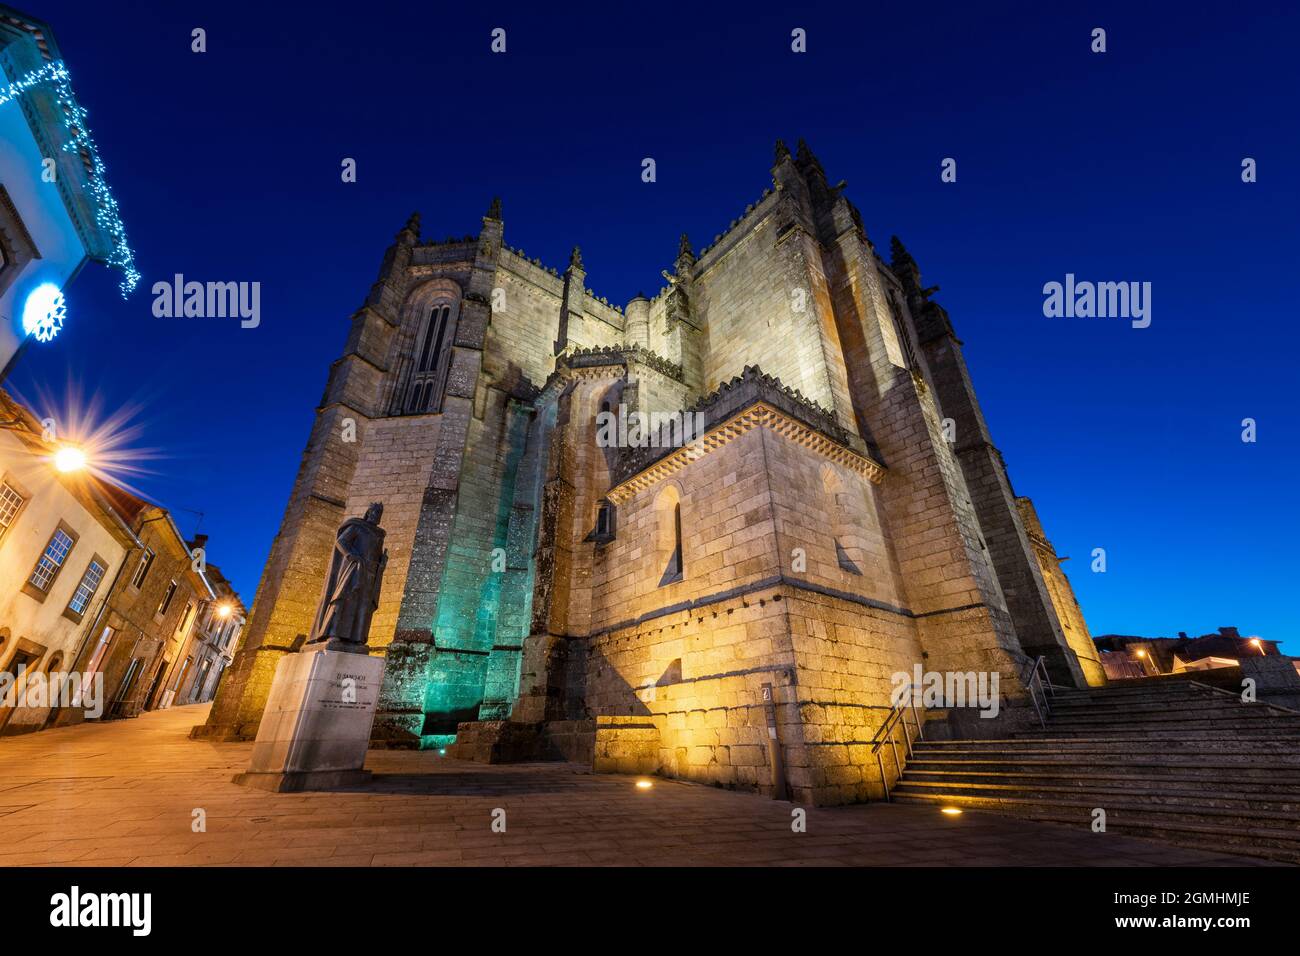 Guarda, Portugal - 28. November 2015: Die Kathedrale von Guarda (SE da Guarda) im historischen Zentrum der Stadt Guarda, Portugal Stockfoto